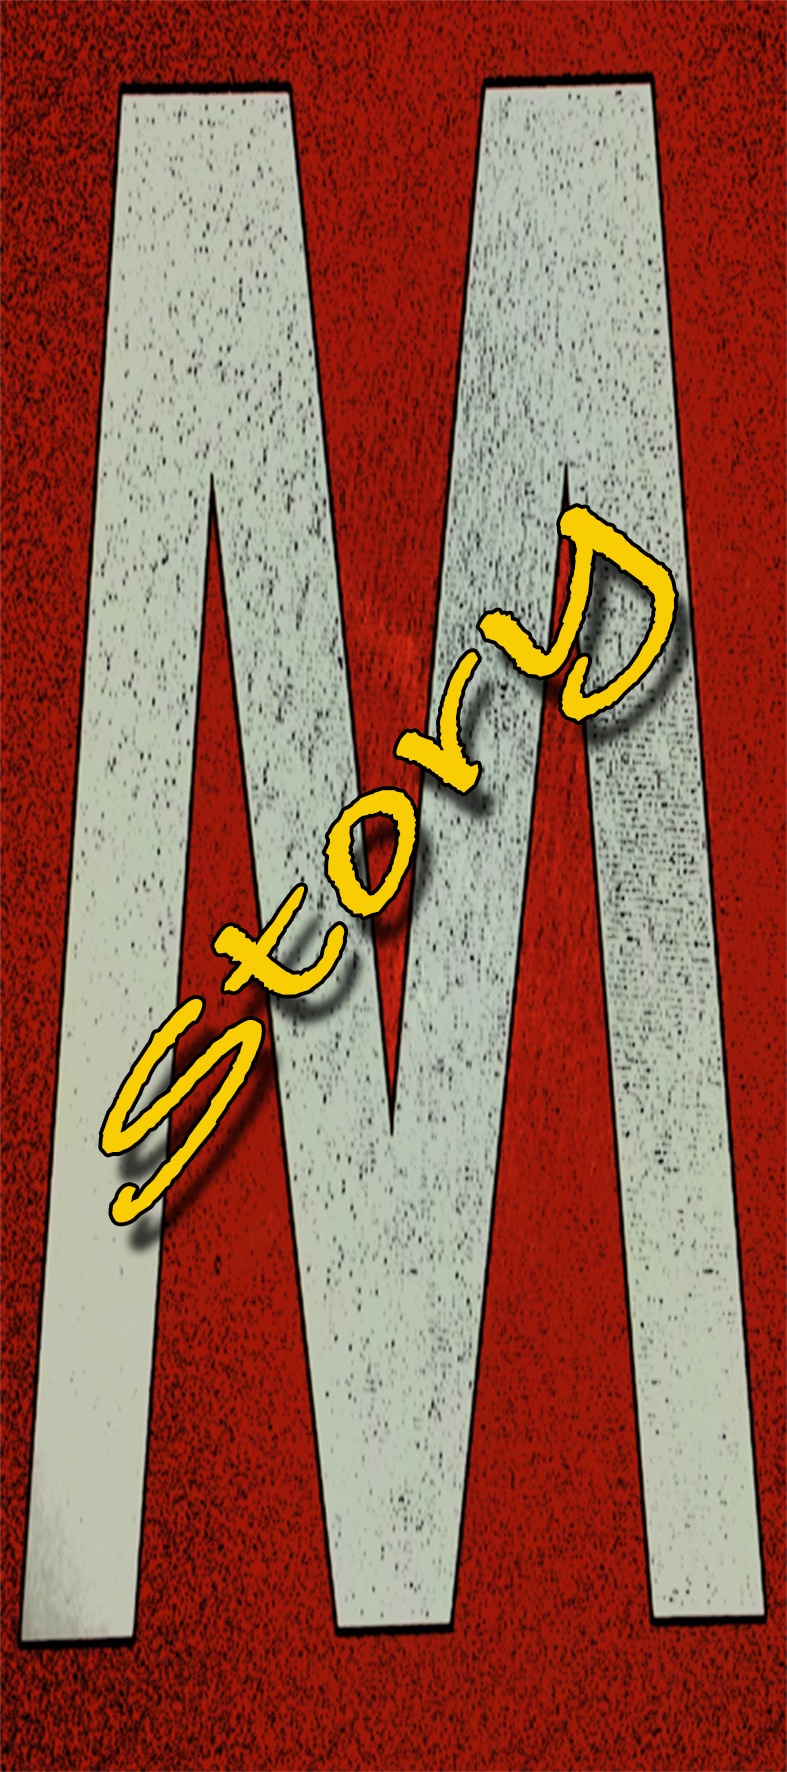 Immagine verticale. In primo piano la scritta corsiva, diagonale, gialla 'Story', sullo sfondo rosso di una lettera stampatello'M', di colore bianco.